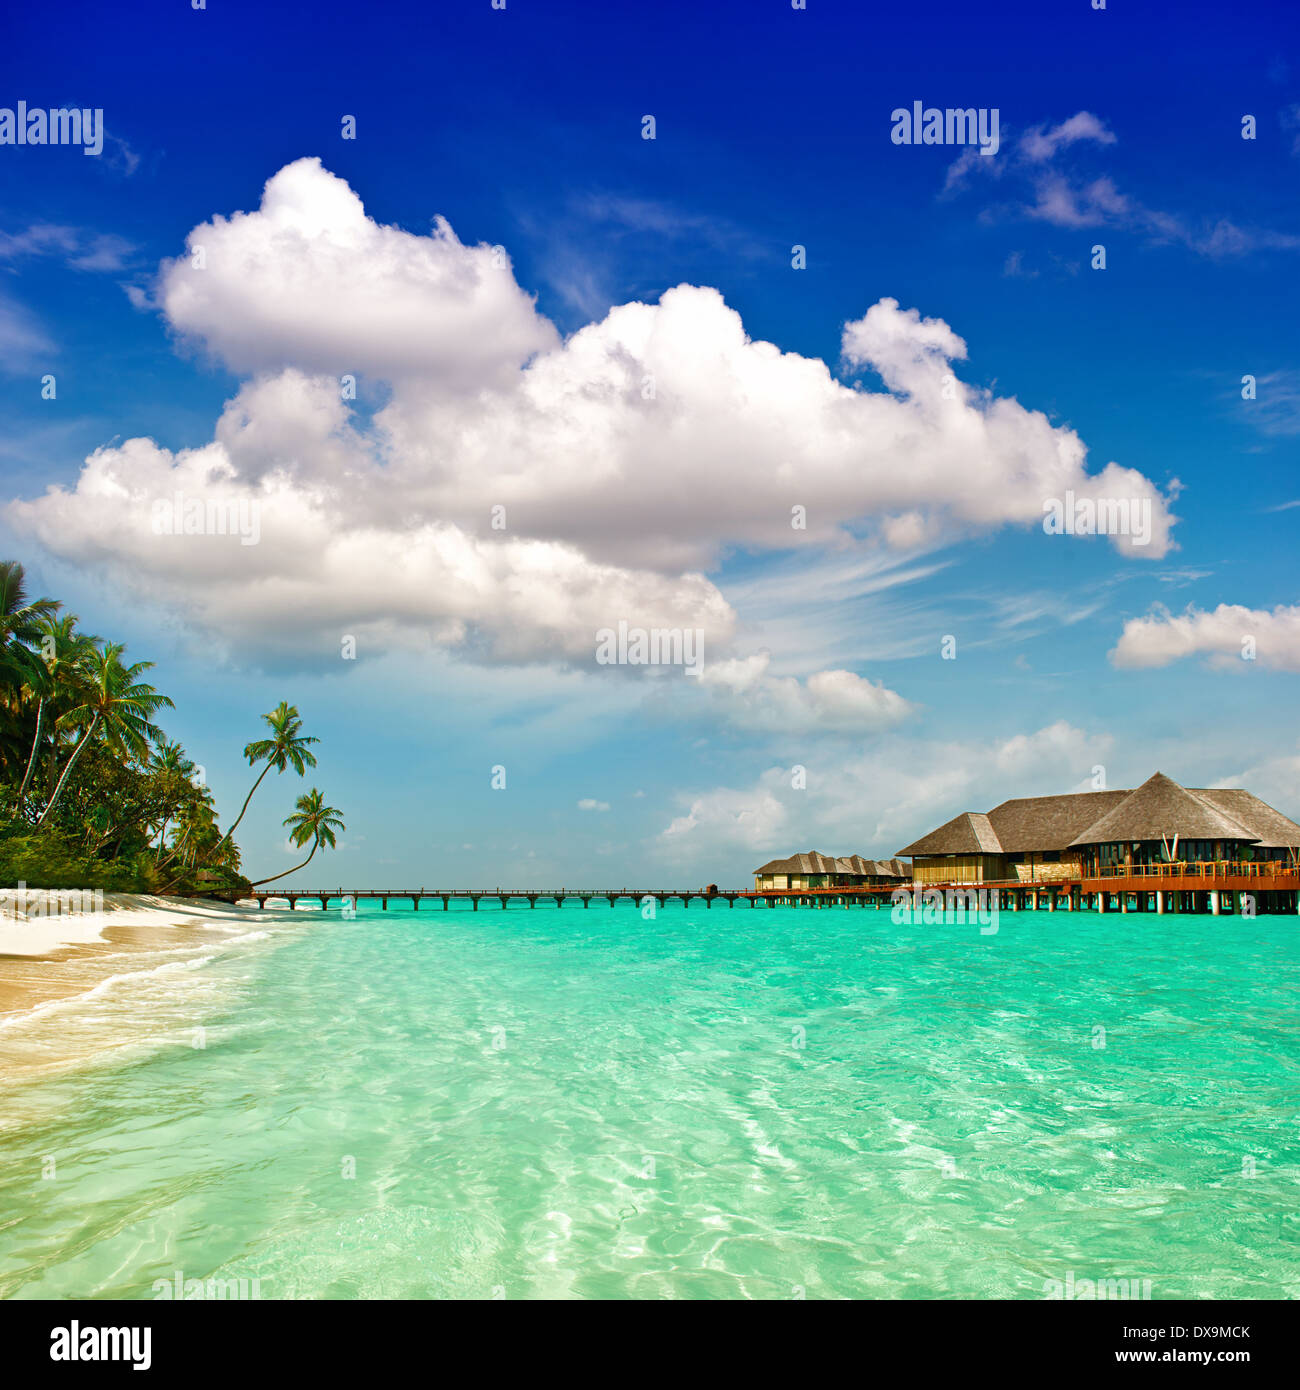 Palm Beach. isola tropicale paesaggio. acque turchesi e nuvoloso cielo blu Foto Stock